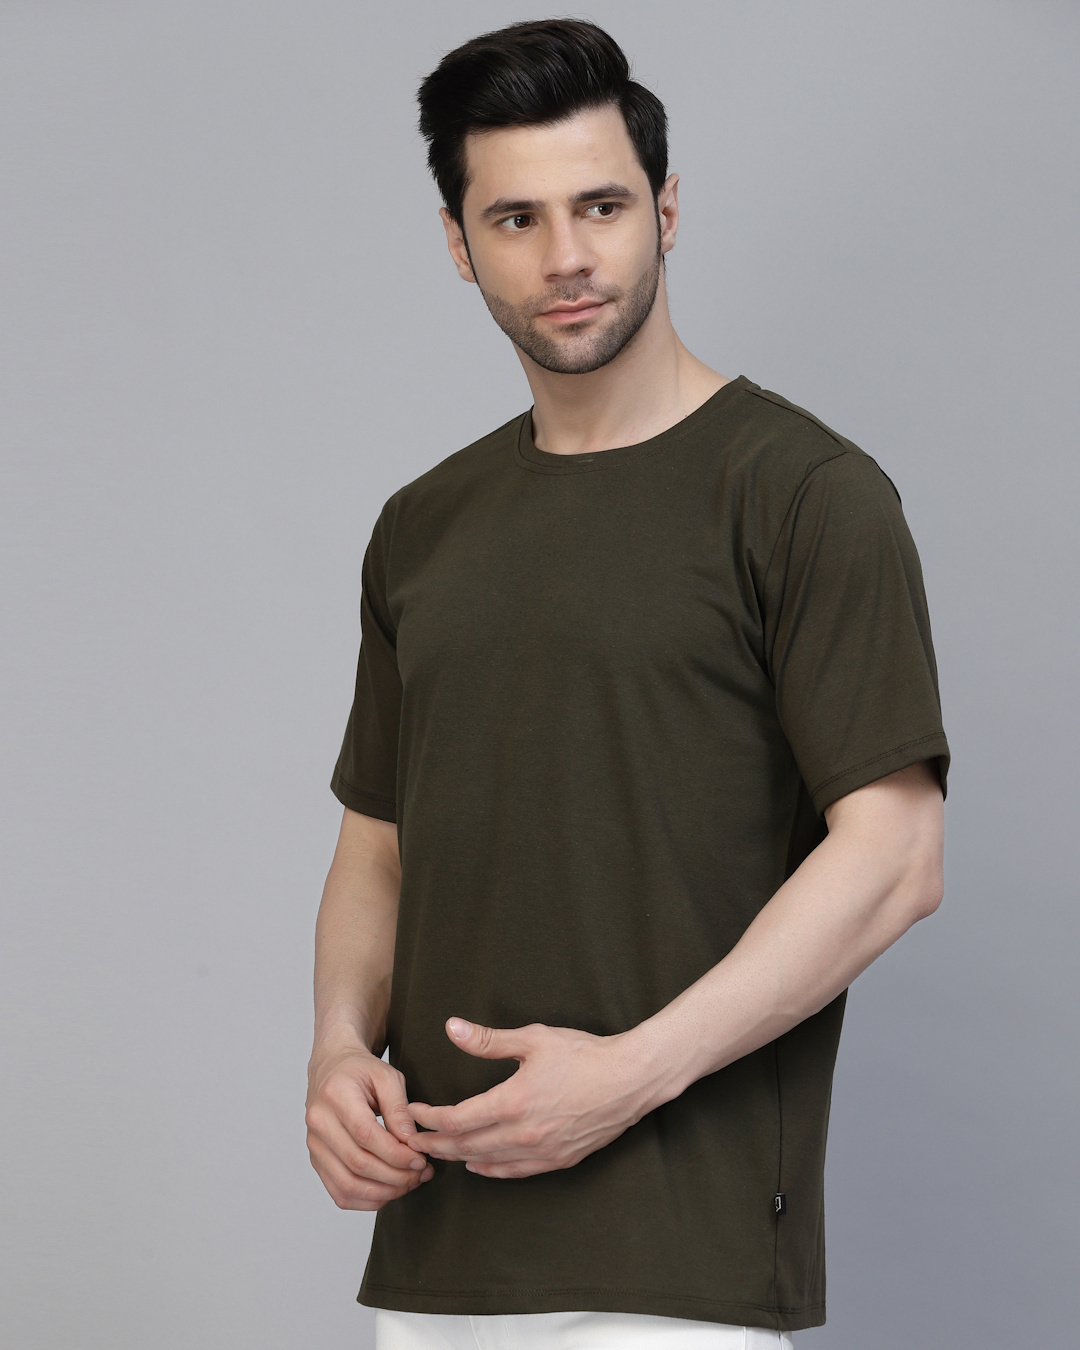 Buy Men's Army Green Printed T-shirt Online at Bewakoof